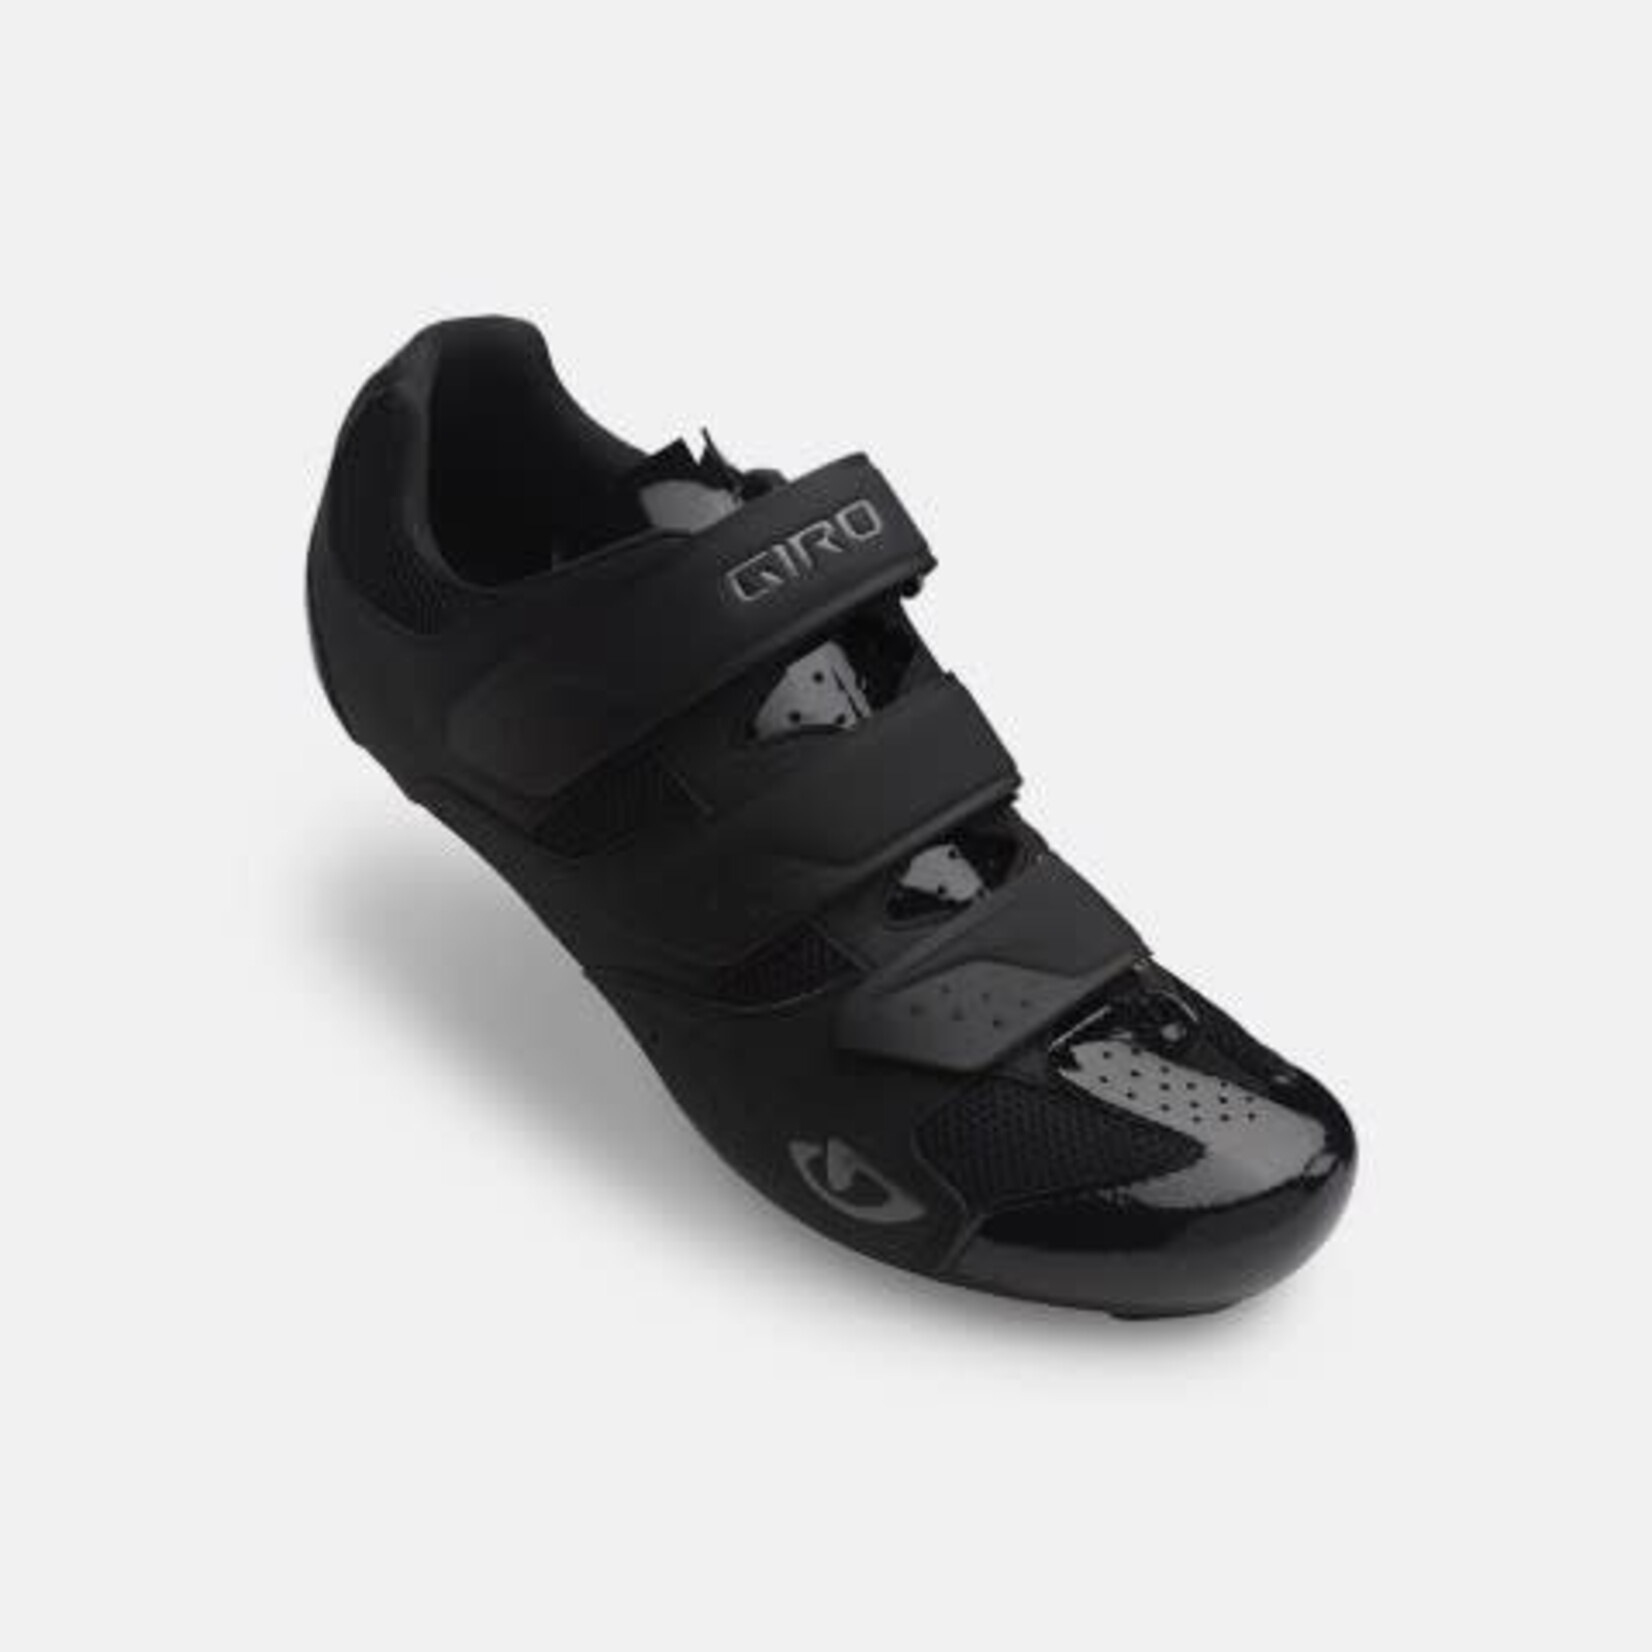 GIRO Chaussures Giro techne noir 46